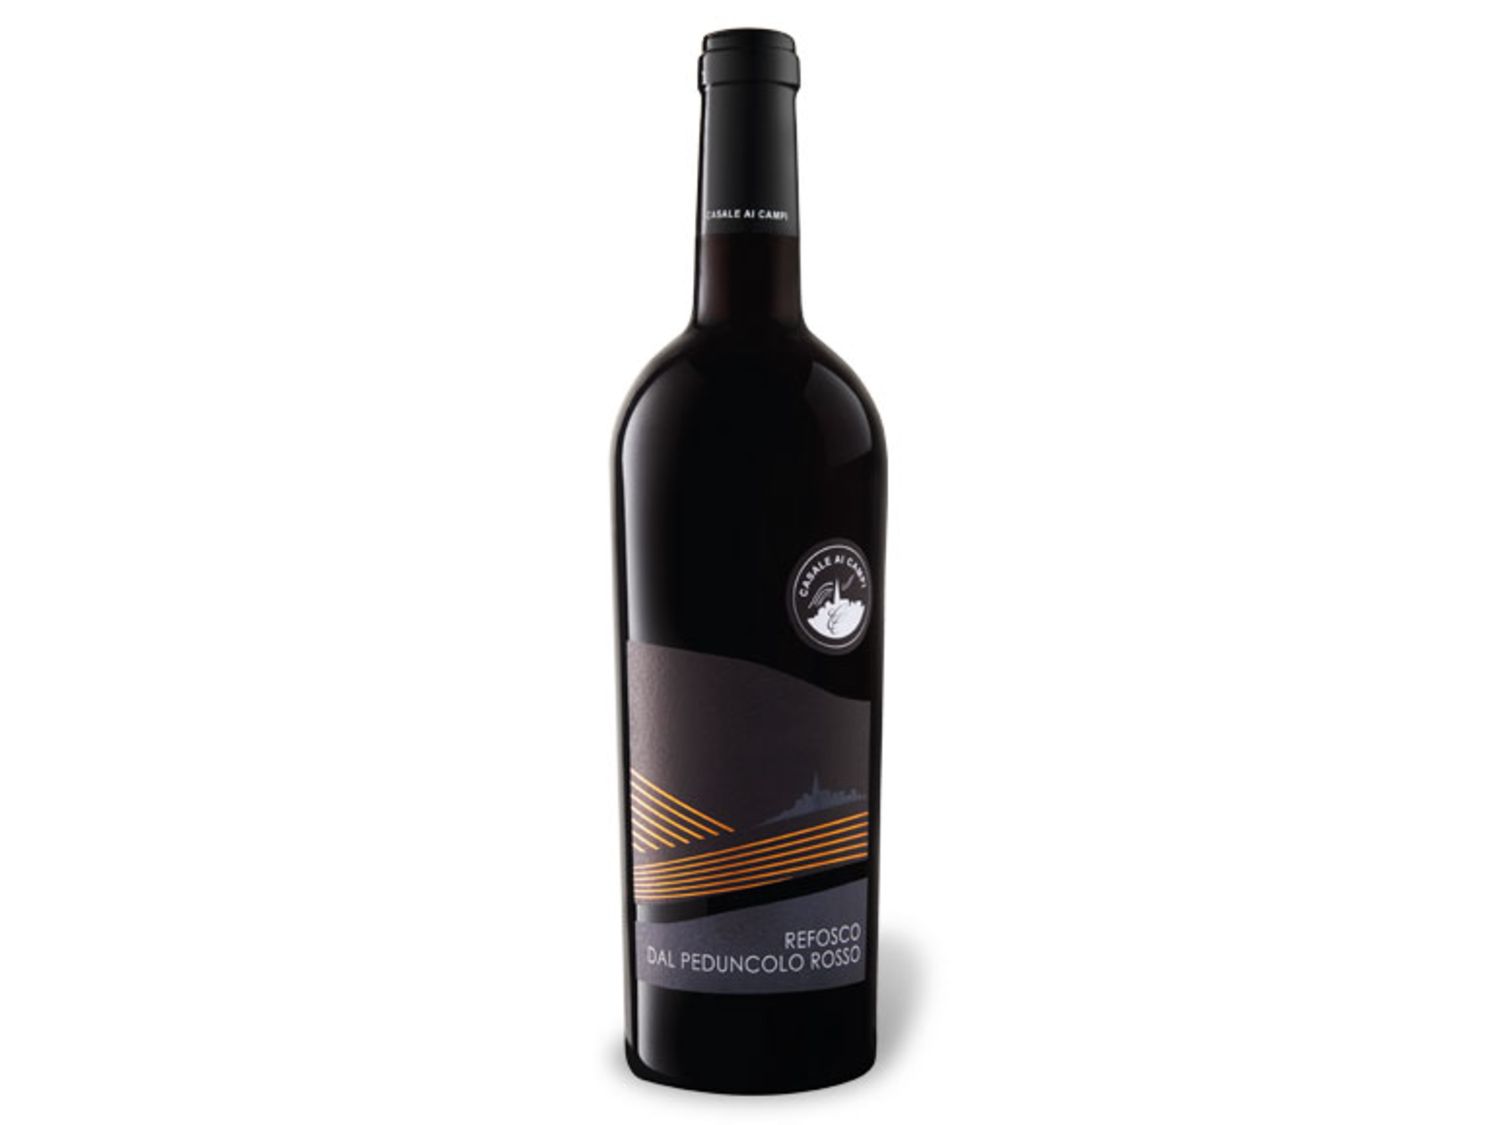 Rotwein, Italien, Friaul, Refosco kaufen Günstig | im Preisvergleich